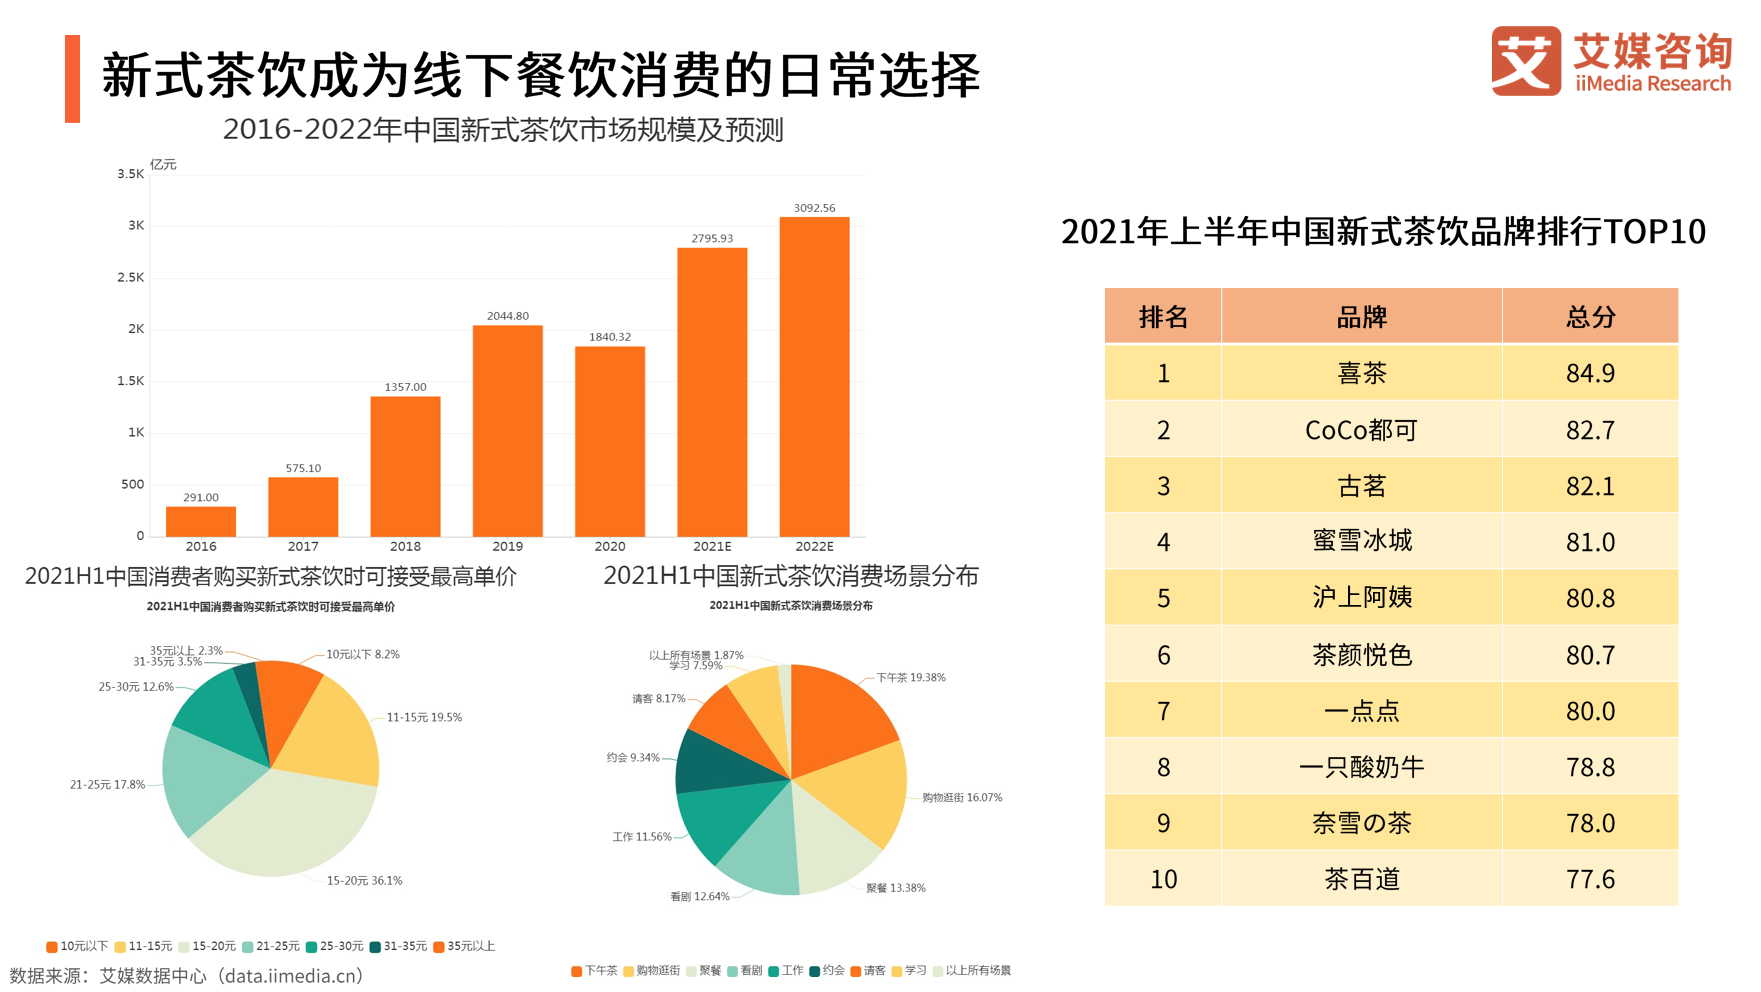 《2021年中国新消费发展趋势研究报告》发布 多领域新消费模式出现